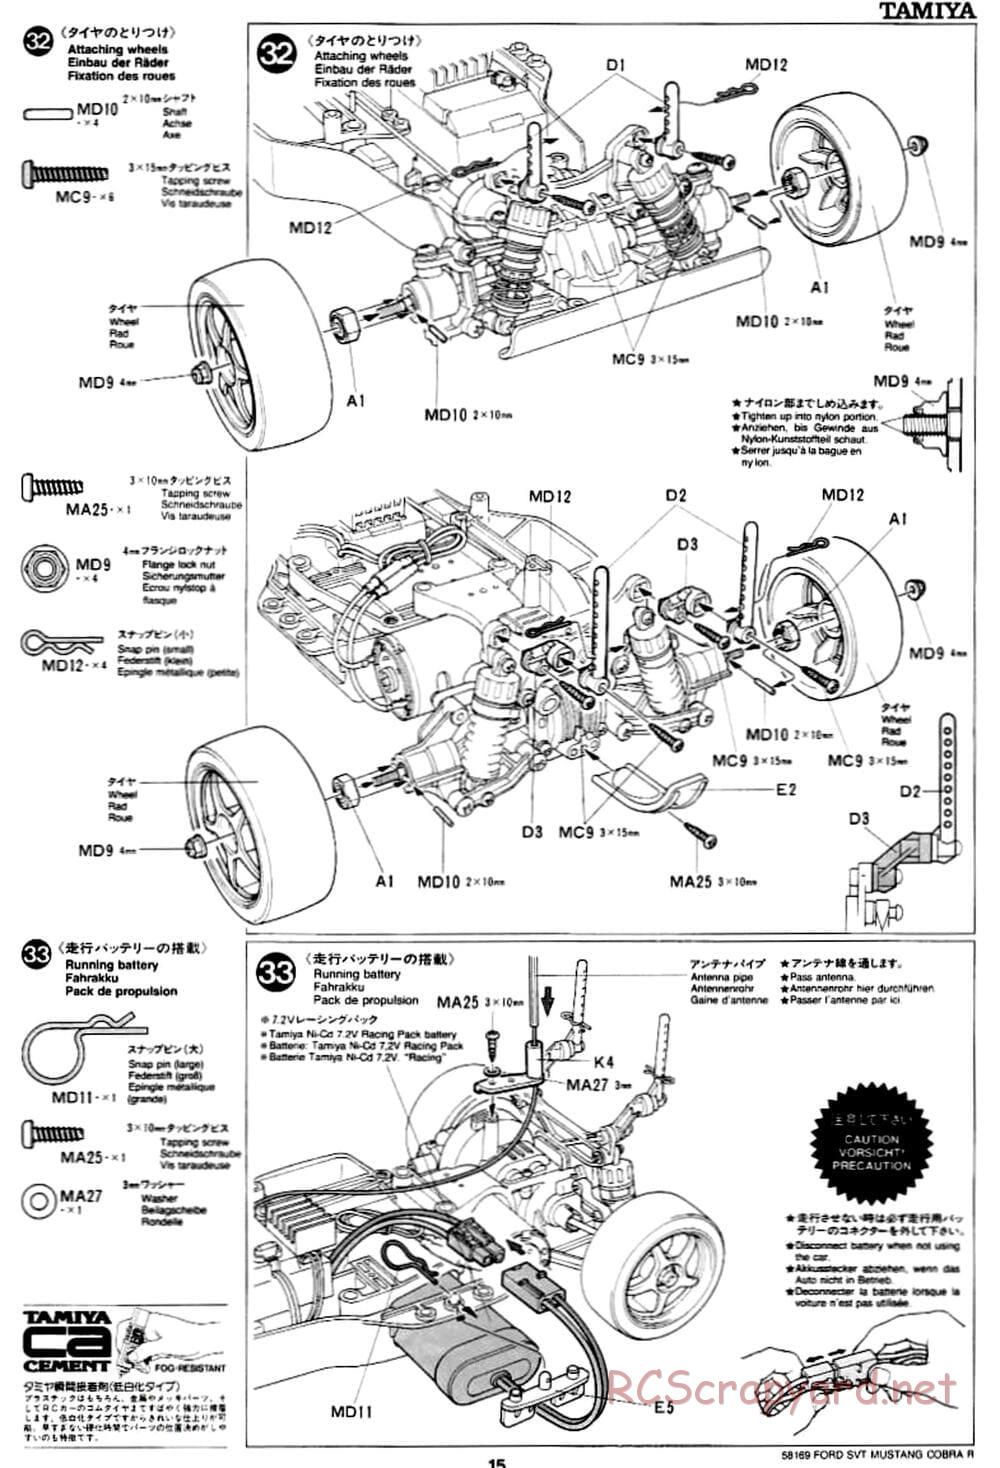 Tamiya - Ford SVT Mustang Cobra-R - TA-02 Chassis - Manual - Page 15